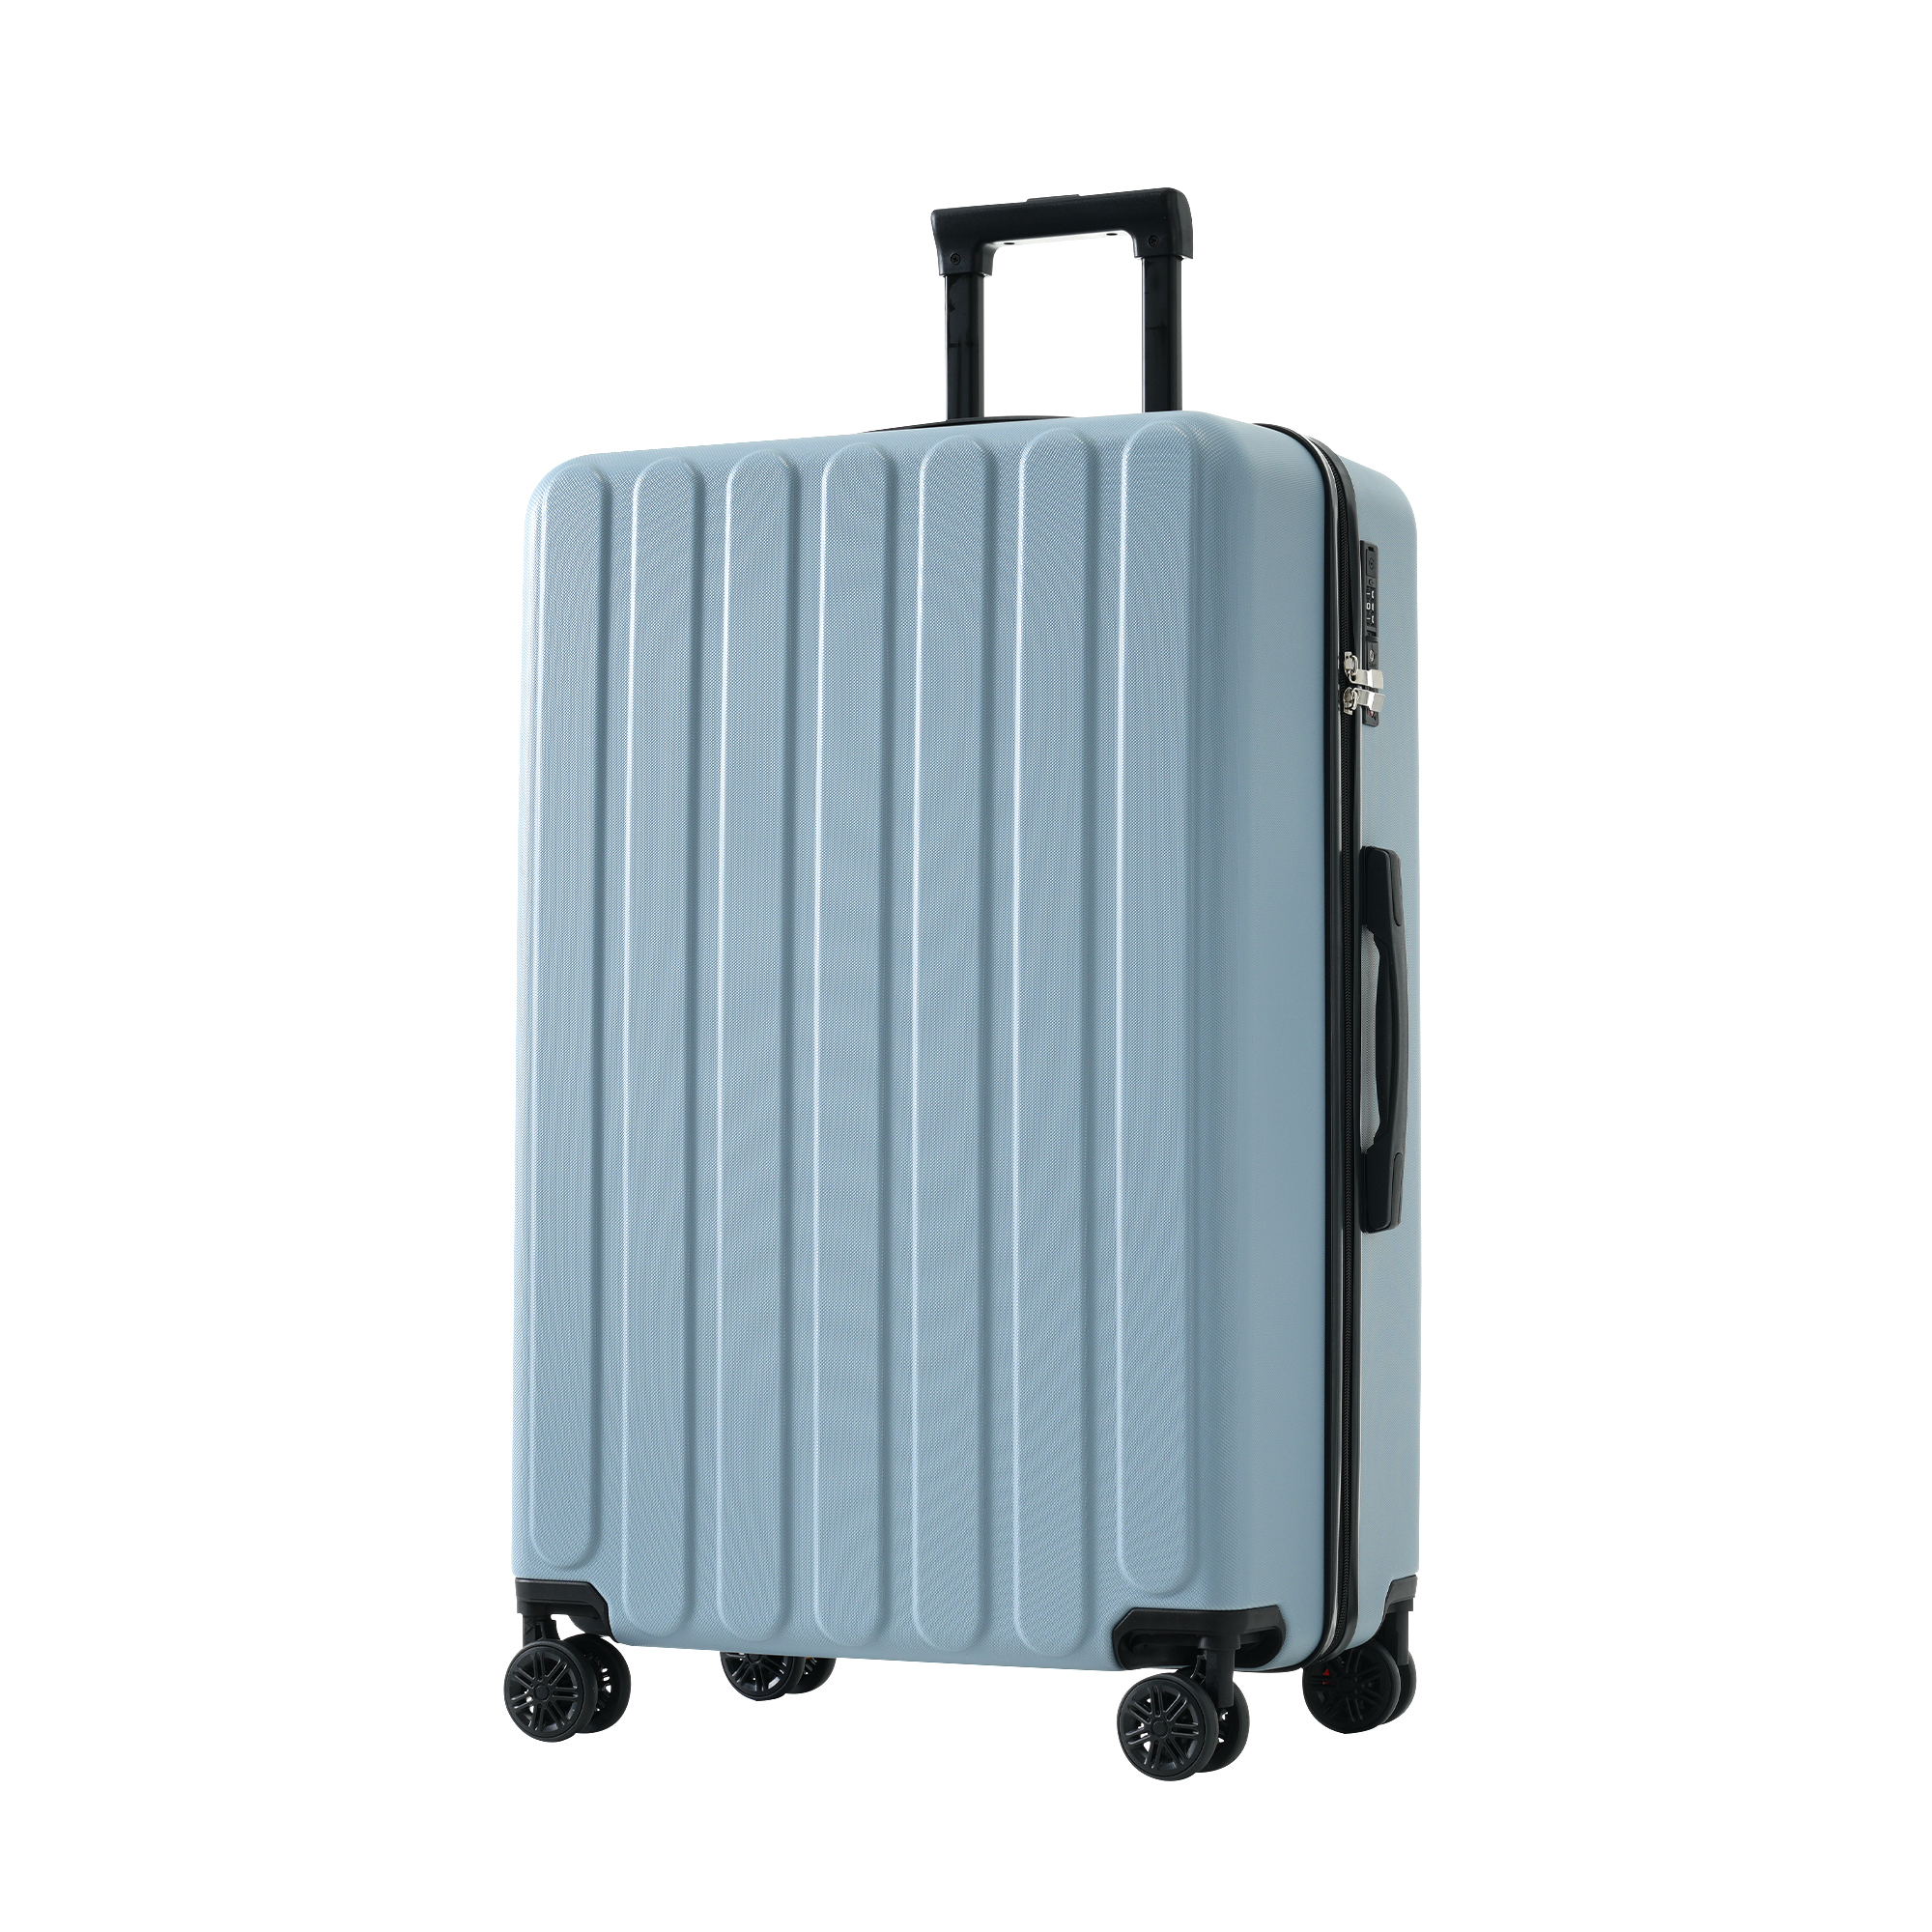 スーツケース Mサイズ 4~7日 大容量 USBポート付き カップホルダー付き ストッパー付き キャ...